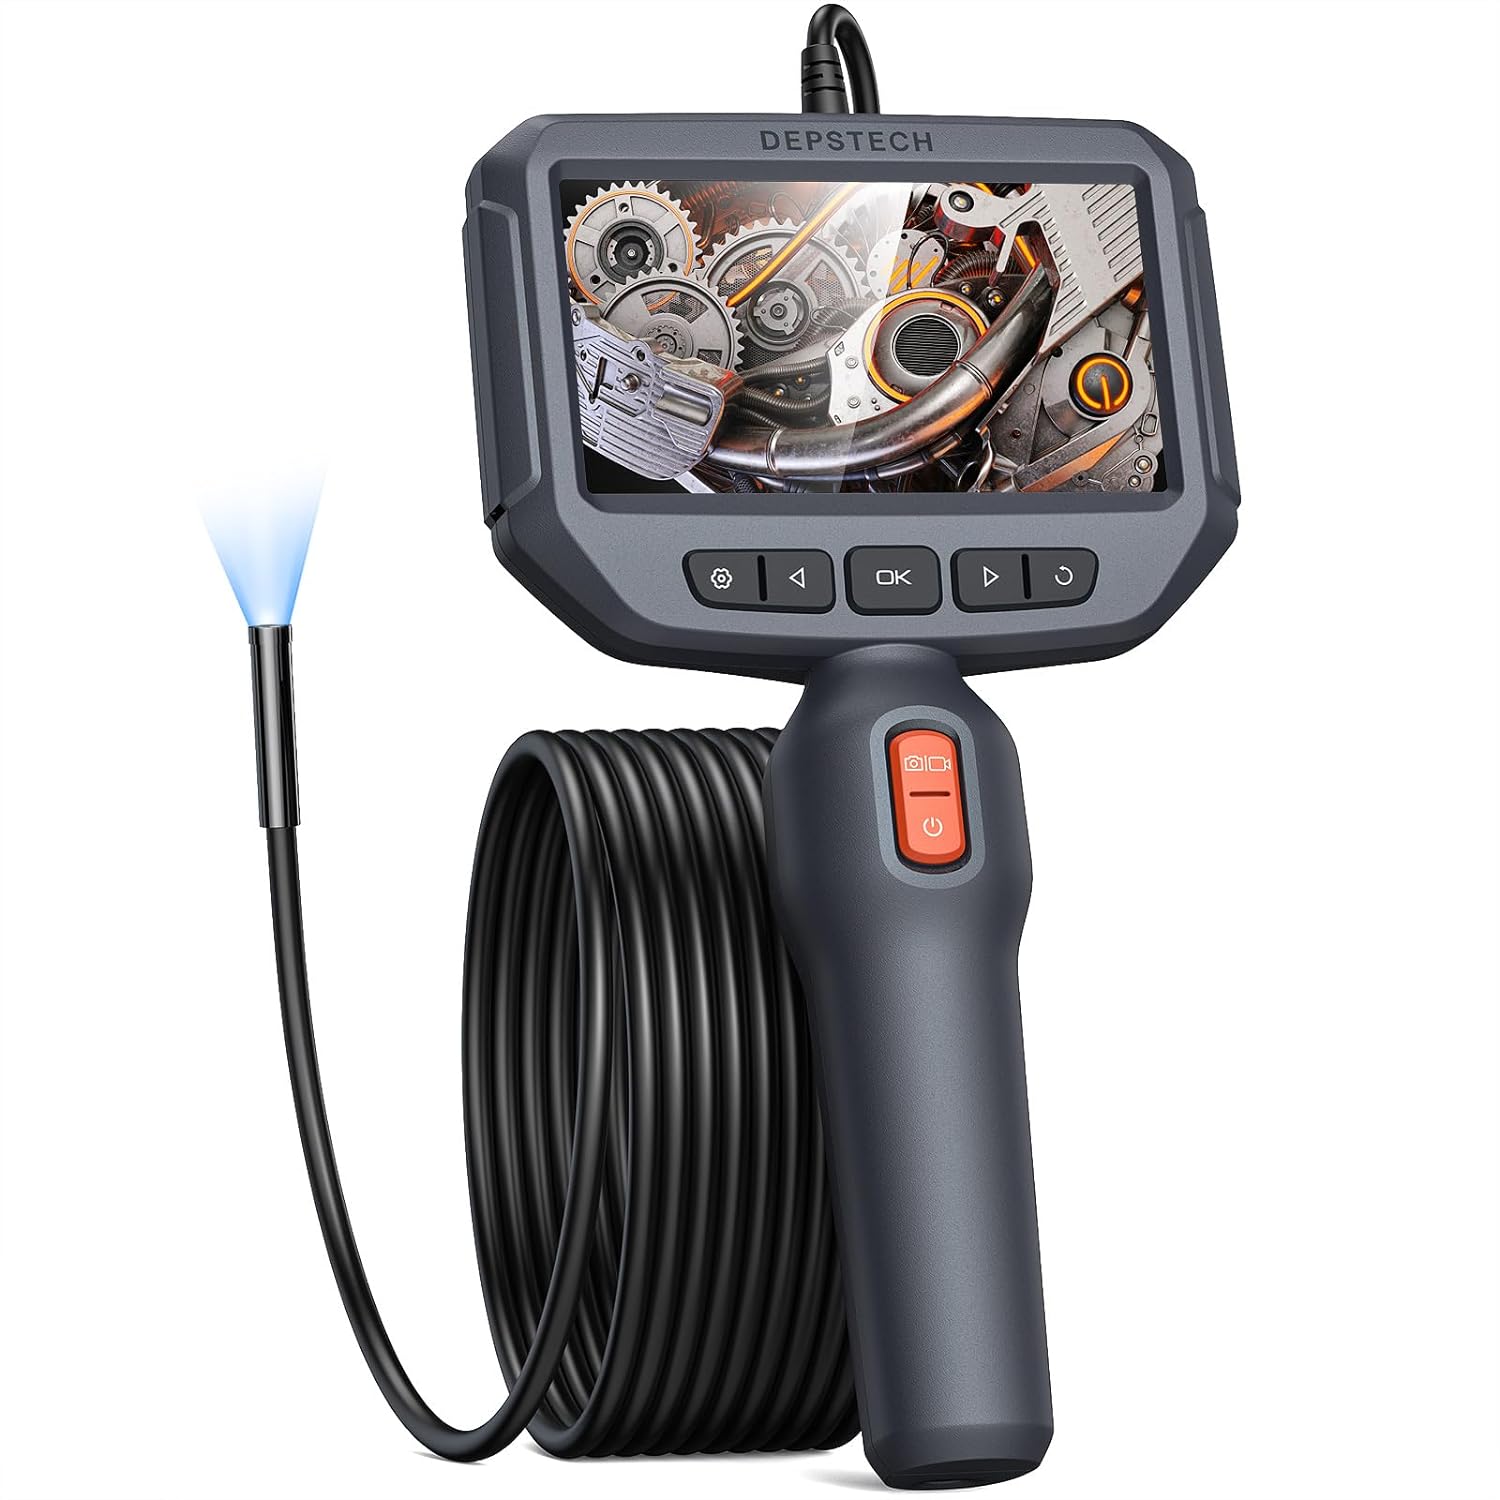 ファイバースコープ DEPSTECH 1080P 内視鏡カメラ 4.3インチIPSスクリーン 7MM極細 マイクロスコープ 大画面モニター搭載 スコープカメラ IP67防水 配管カメラ 工業用 検査カメラ LEDライト付…